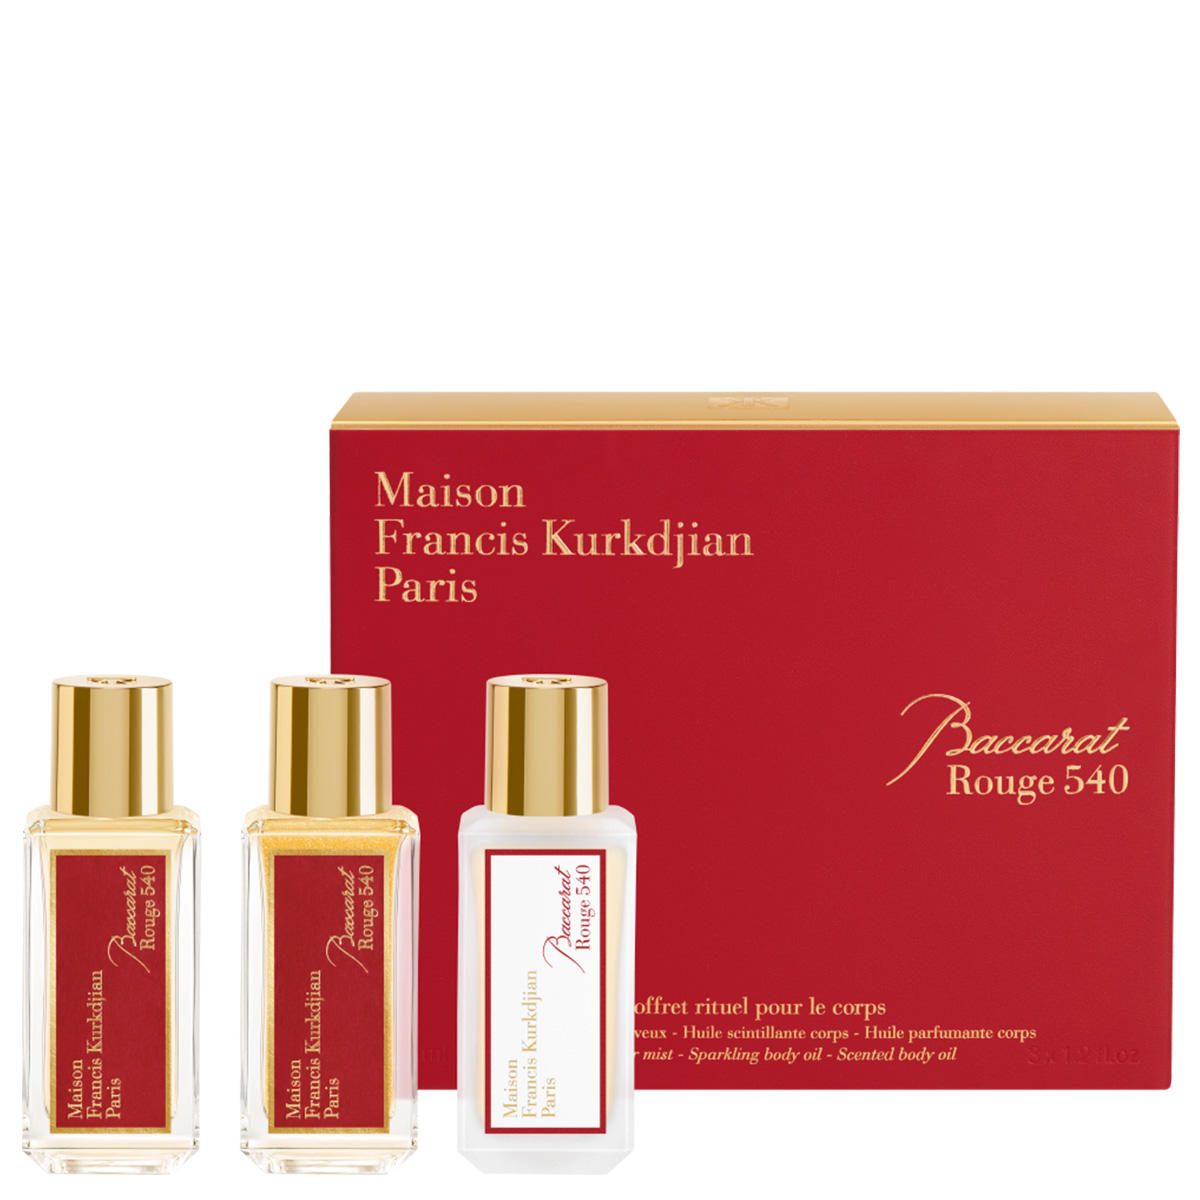 Maison Francis Kurkdjian Paris Baccarat Rouge 540 Body Ritual Set 3 x 35 ml - 1